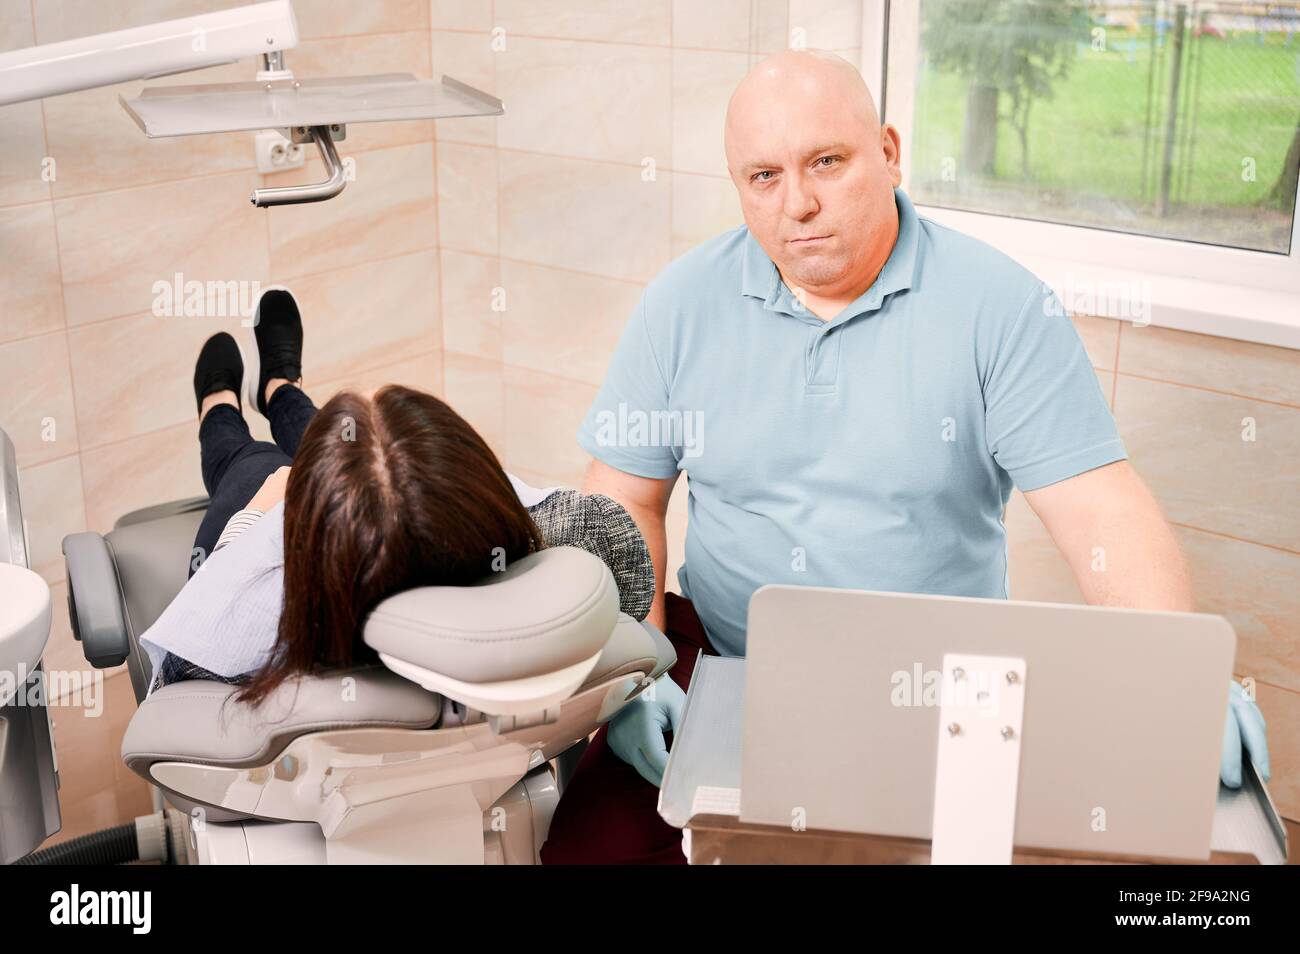 Dentista che guarda la fotocamera mentre si siede accanto alla paziente. Donna sdraiata in sedia dentale durante il trattamento stomatologico in centro medico. Concetto di odontoiatria, stomatologia e cura dentale Foto Stock